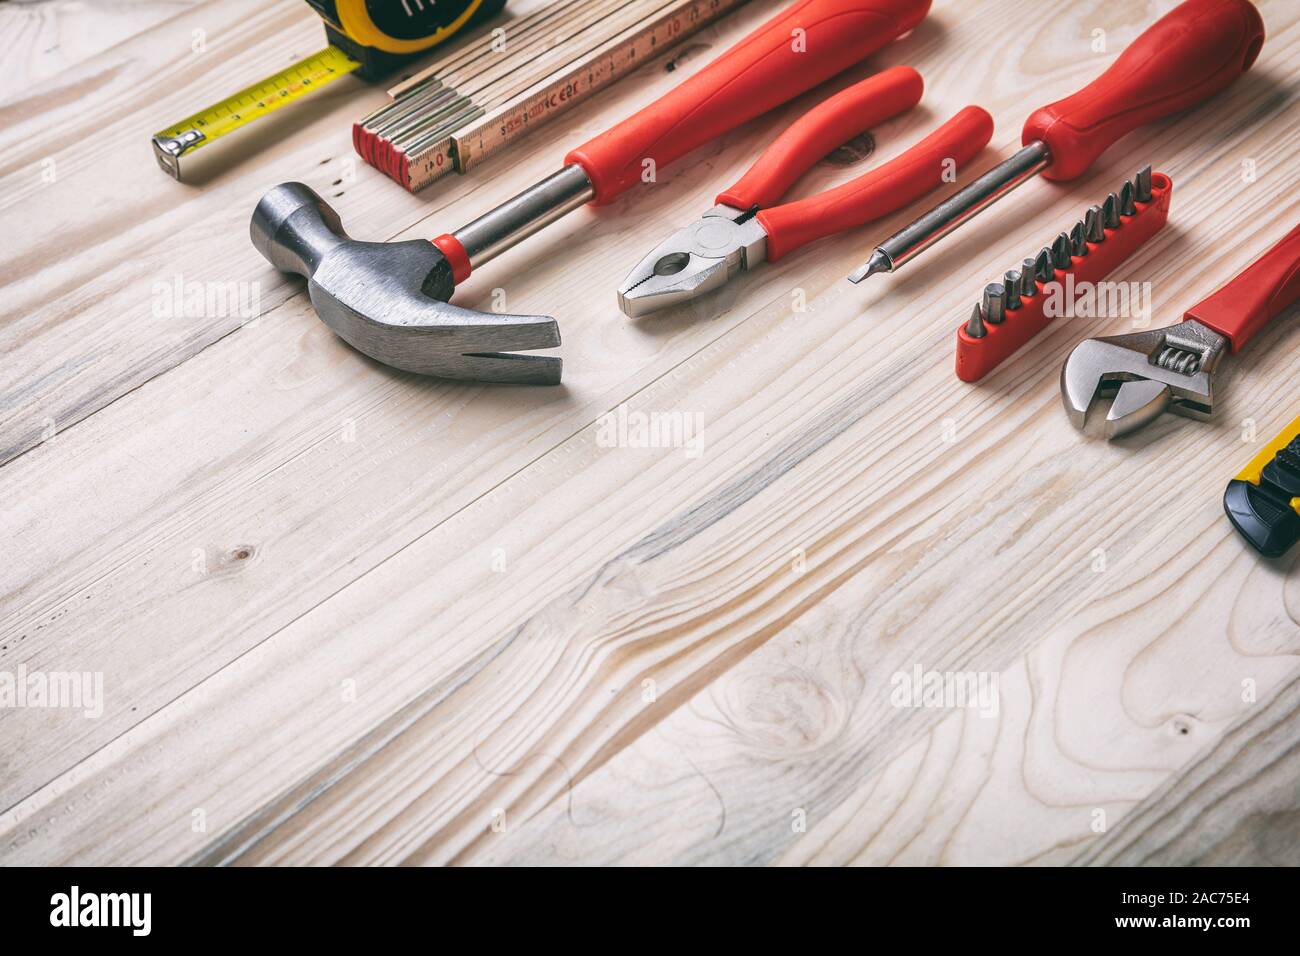 Bricolage, réparation, service concept. Ensemble d'outils à main de couleur rouge et jaune sur bois, copie espace, vue en gros plan. Banque D'Images